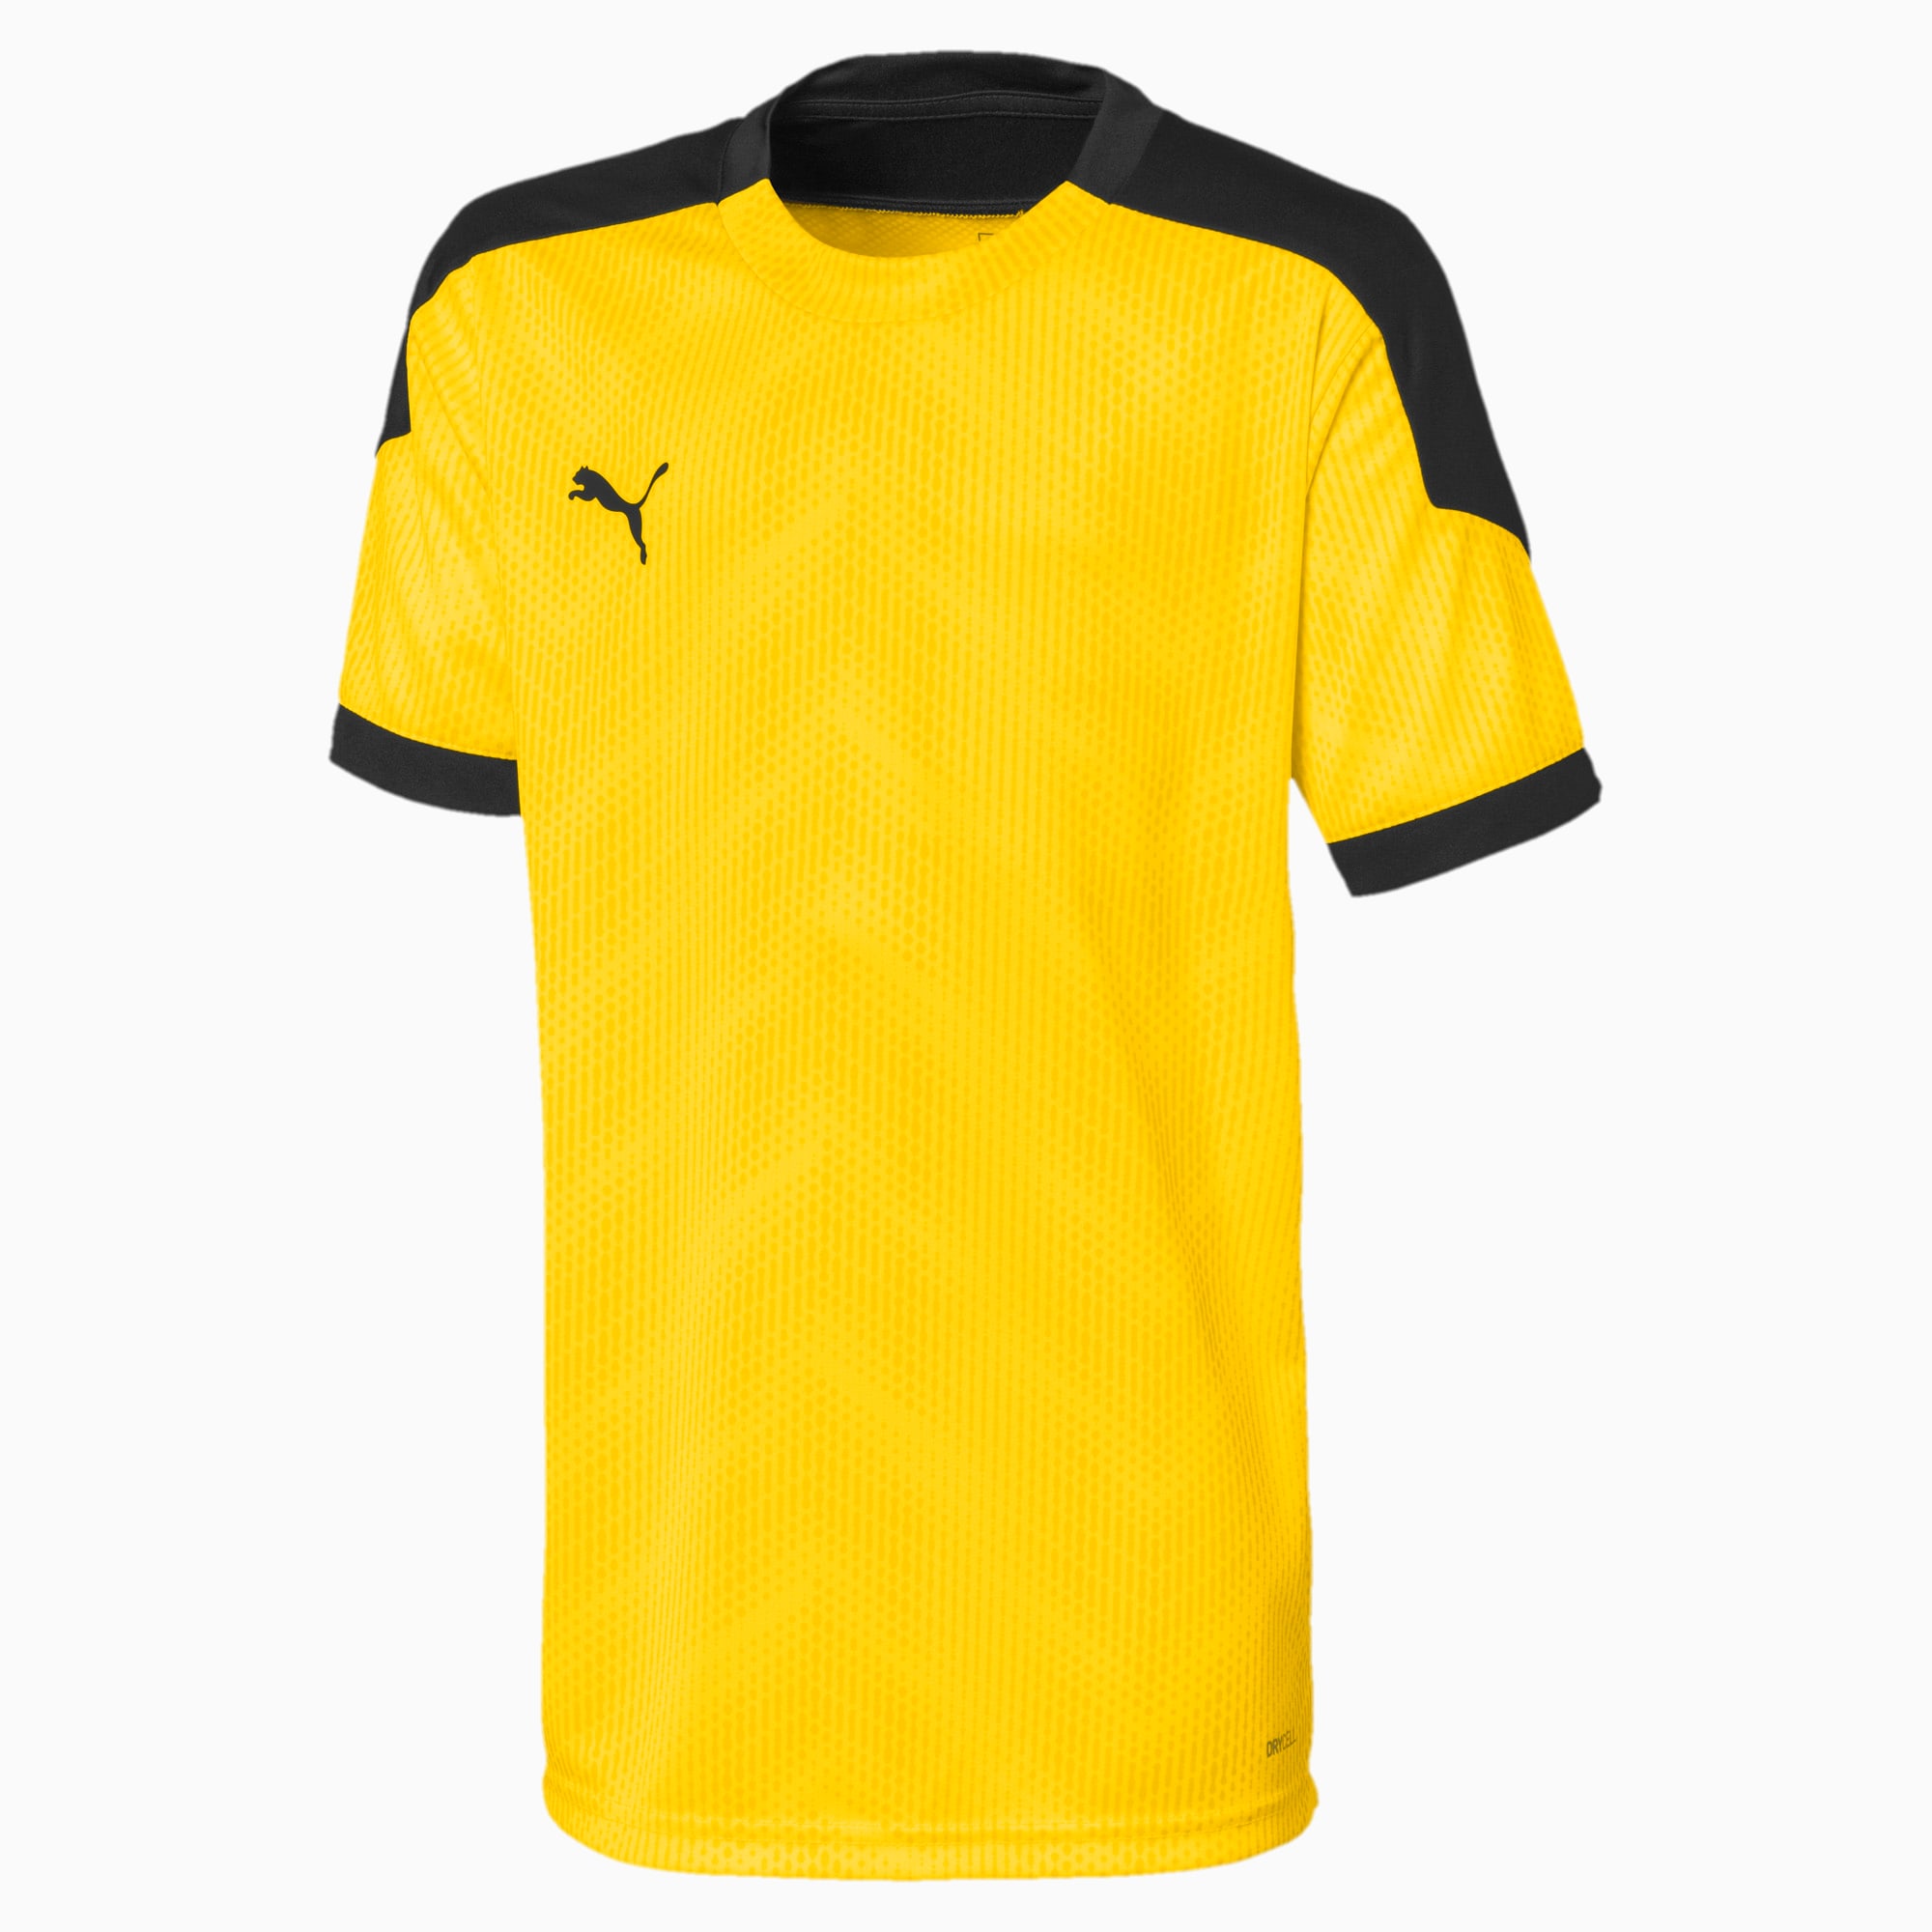 Image of PUMA ftblNXT Graphic Kinder Fußball T-Shirt | Mit Aucun | Gelb/Schwarz | Größe: 104